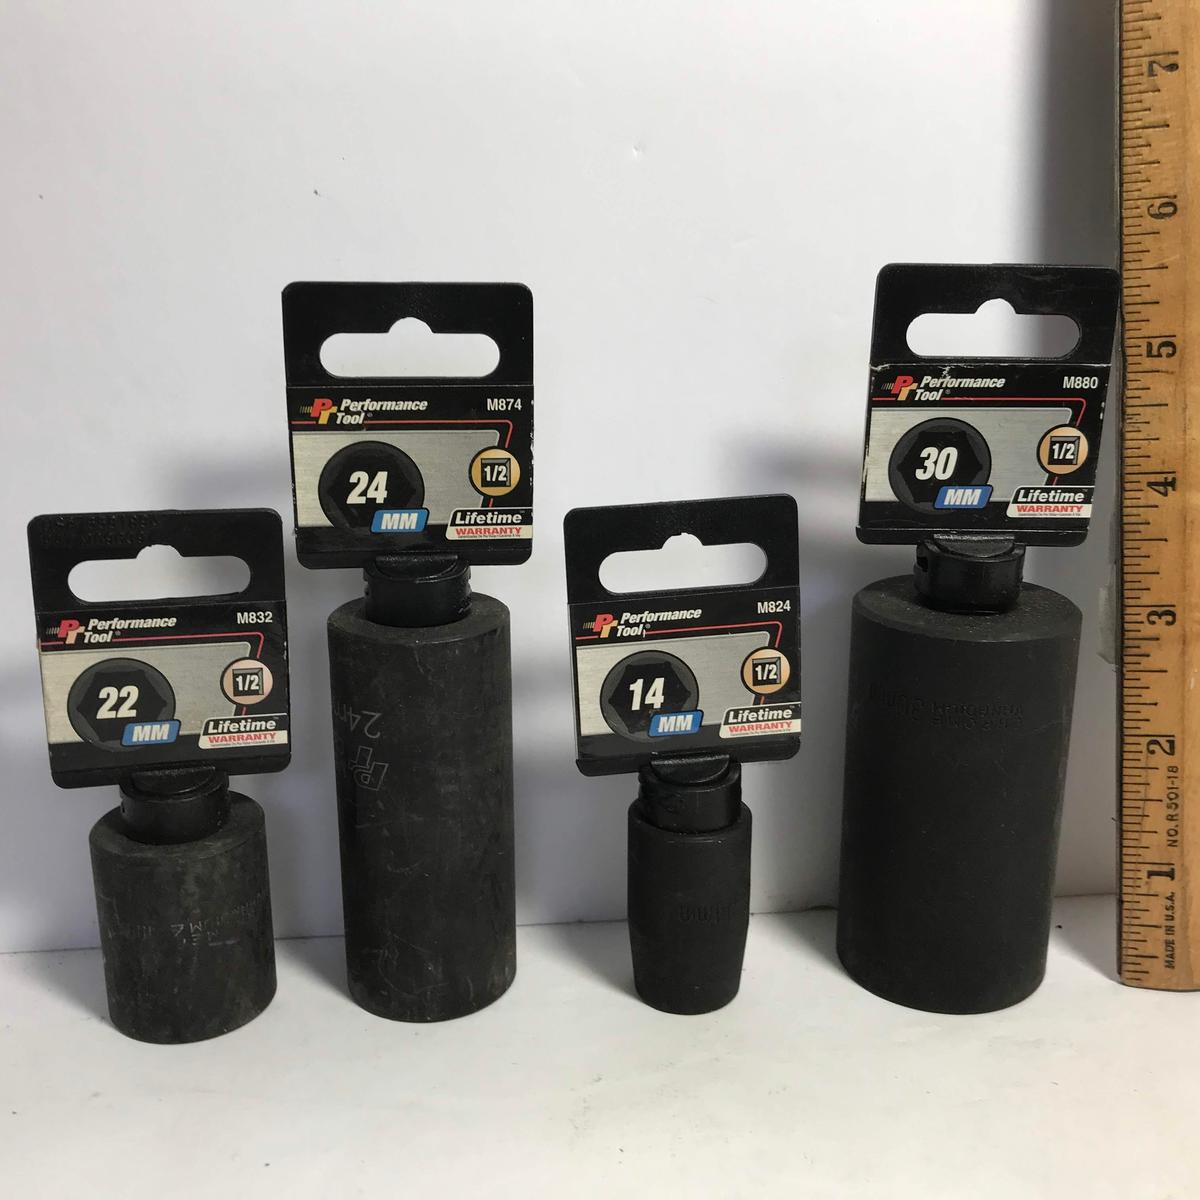 Lot of 4 - 1/2” Sockets - 22 mm, 24 mm, 14 mm, 30 mm